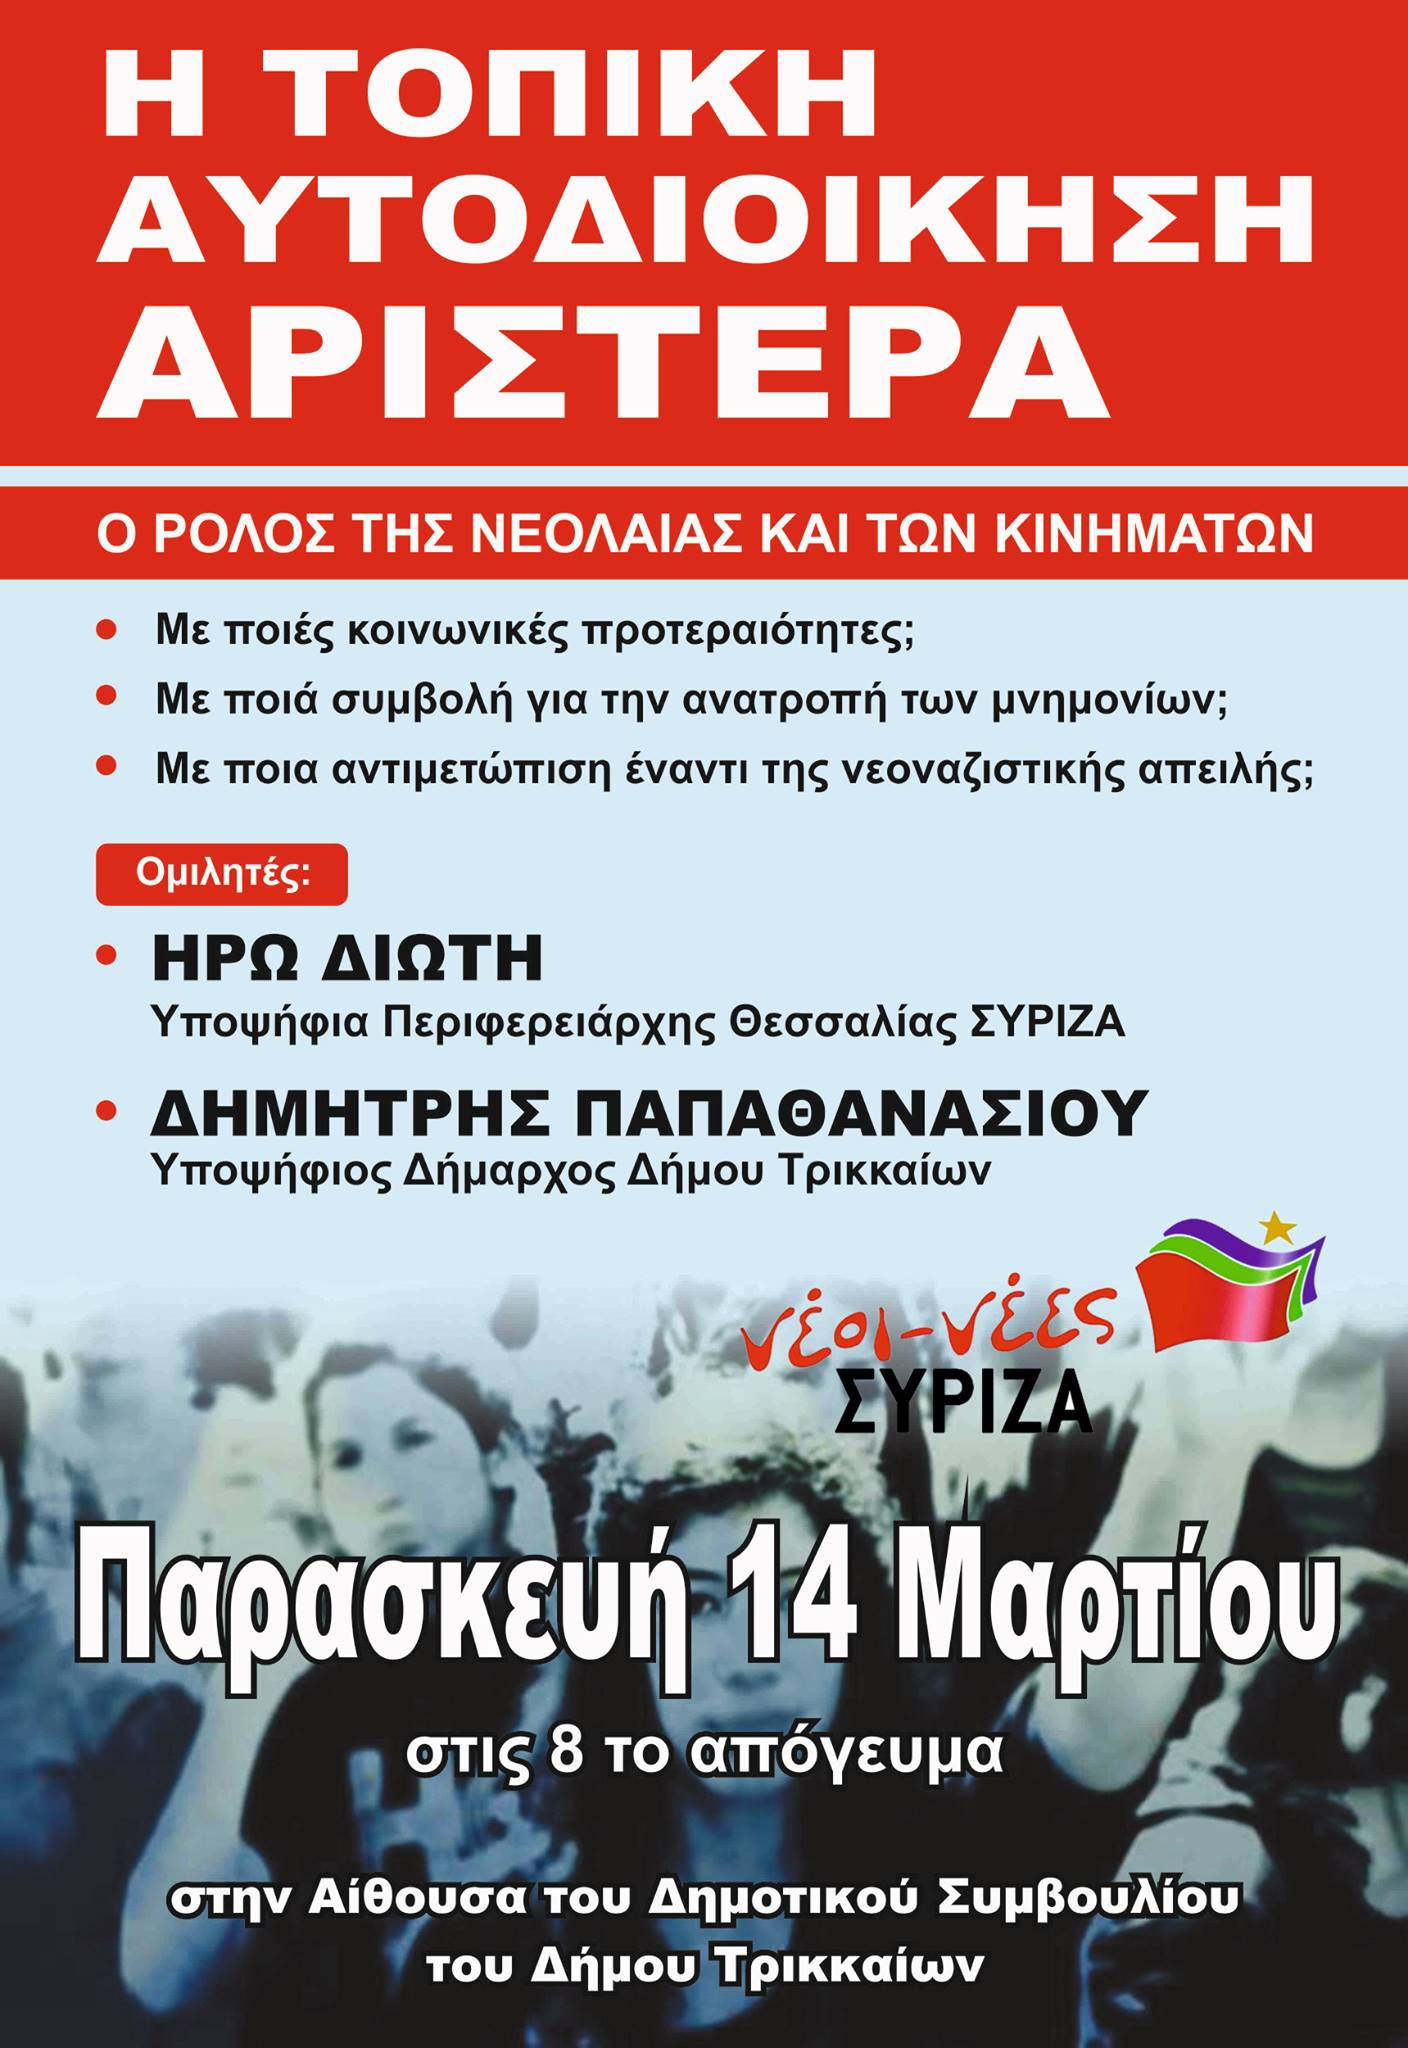 Πολιτική εκδήλωση-συζήτηση της νεολαίας ΣΥΡΙΖΑ Τρικάλων